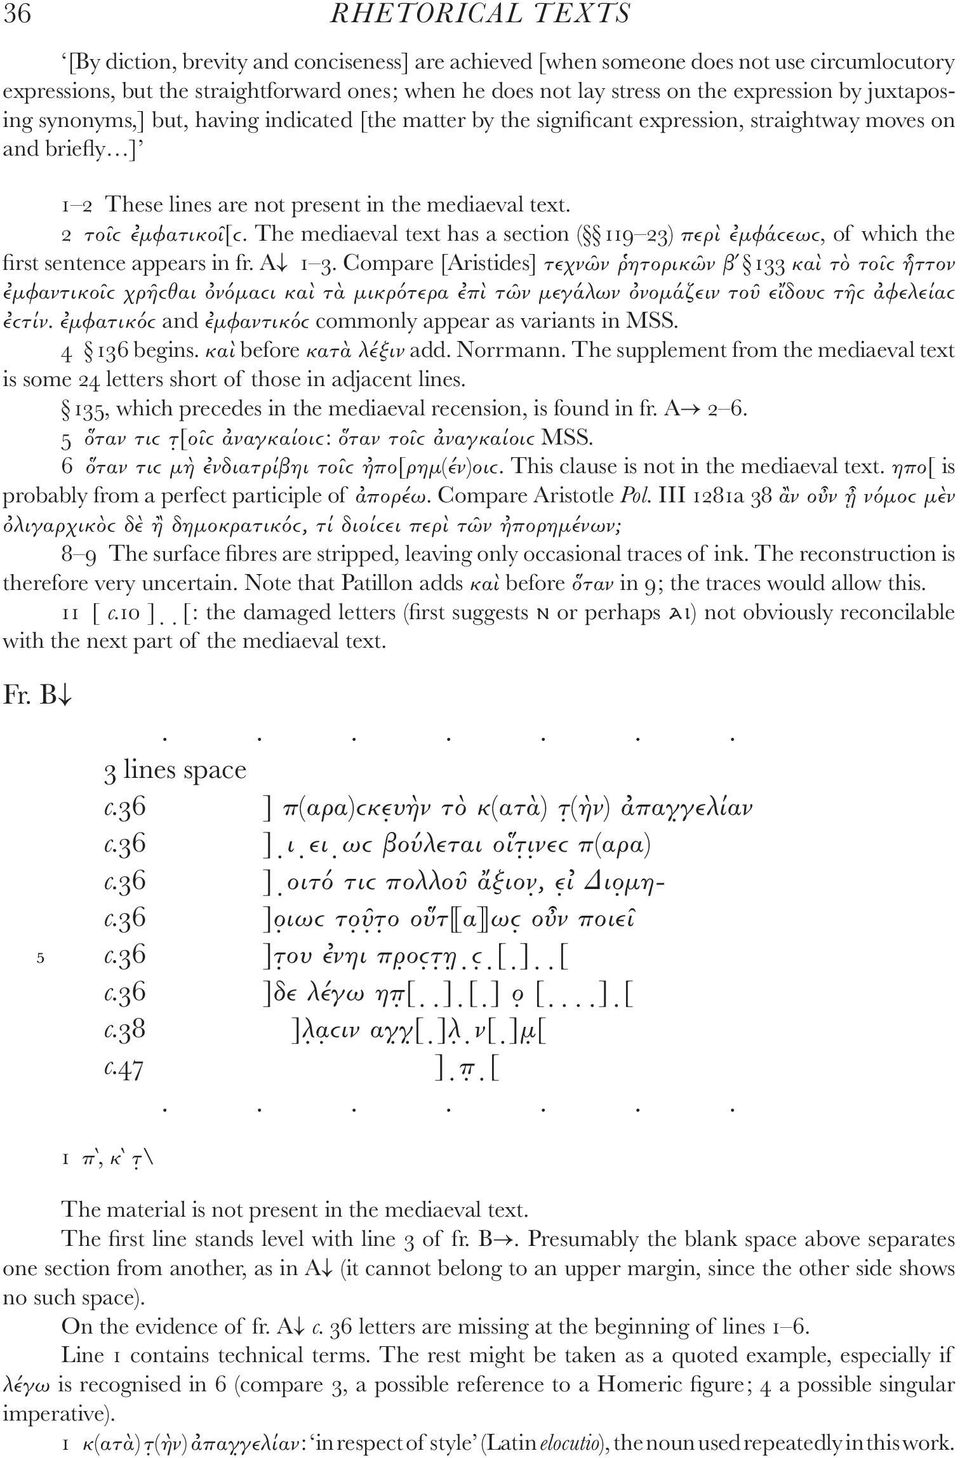 2 τοῖϲ ἐμφατικοῖ[ϲ. The mediaeval text has a section ( 119 23) περὶ ἐμφάϲεωϲ, of which the first sentence appears in fr. A 1 3.